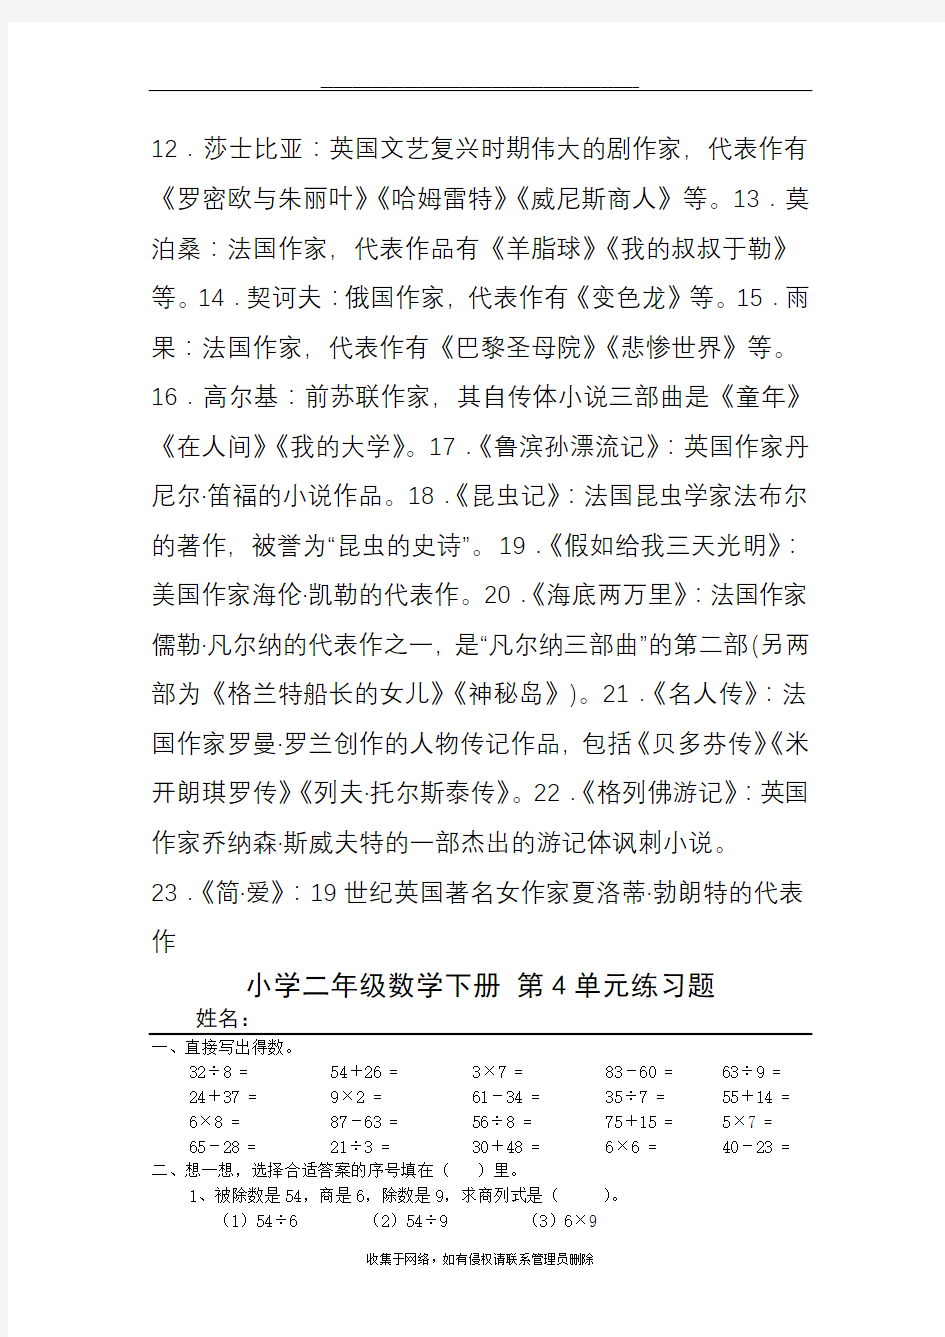 最新初中语文重要作家作品传统文化知识整理